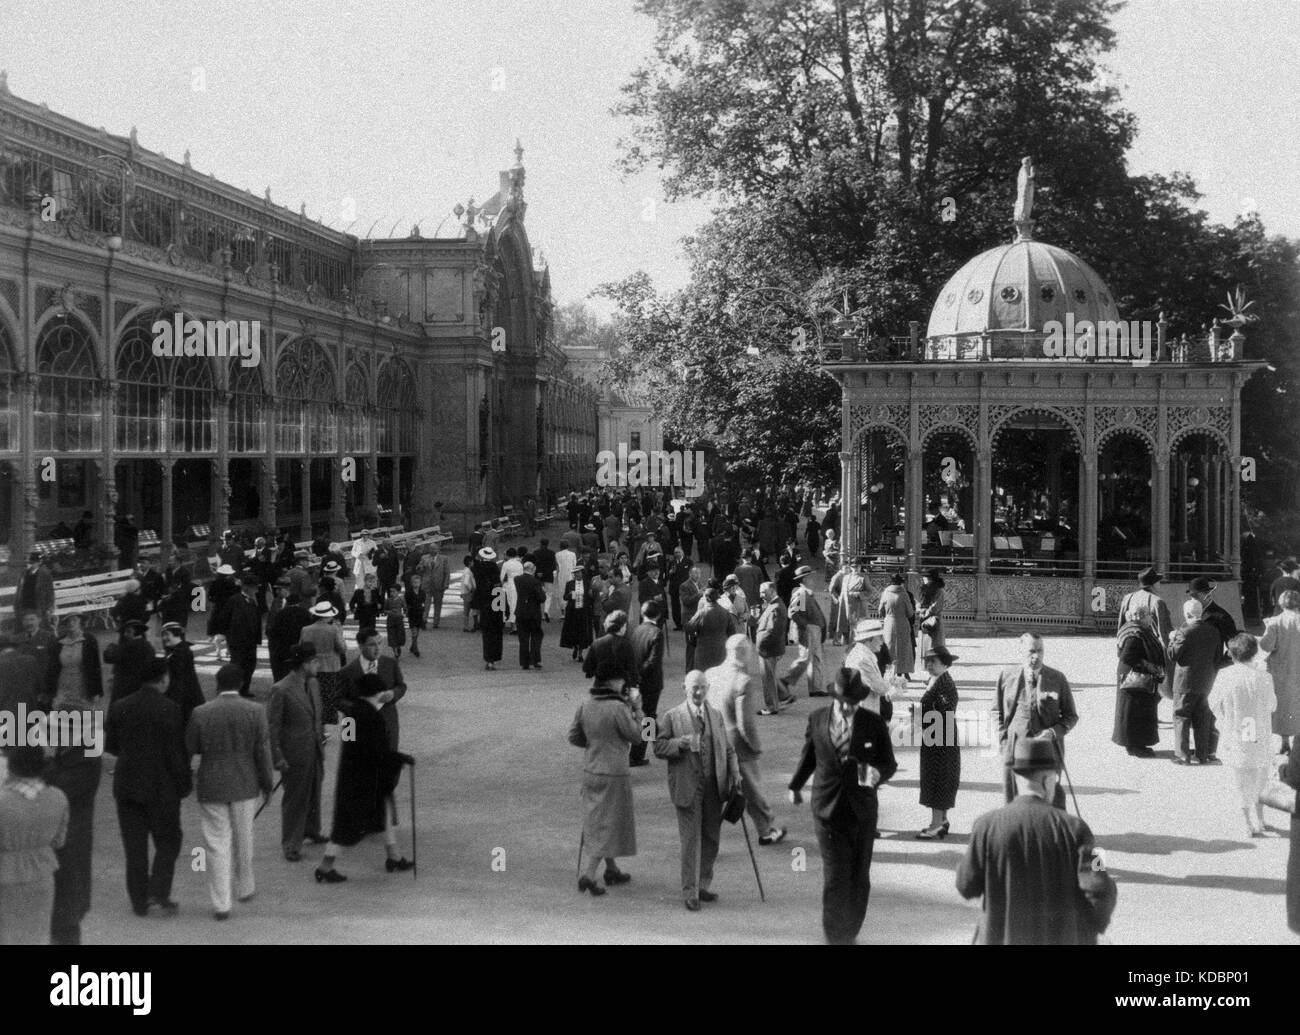 La gente llene el promenade en Marienbad (Marianske lazne) en Checoslovaquia, en 1936. Foto de stock